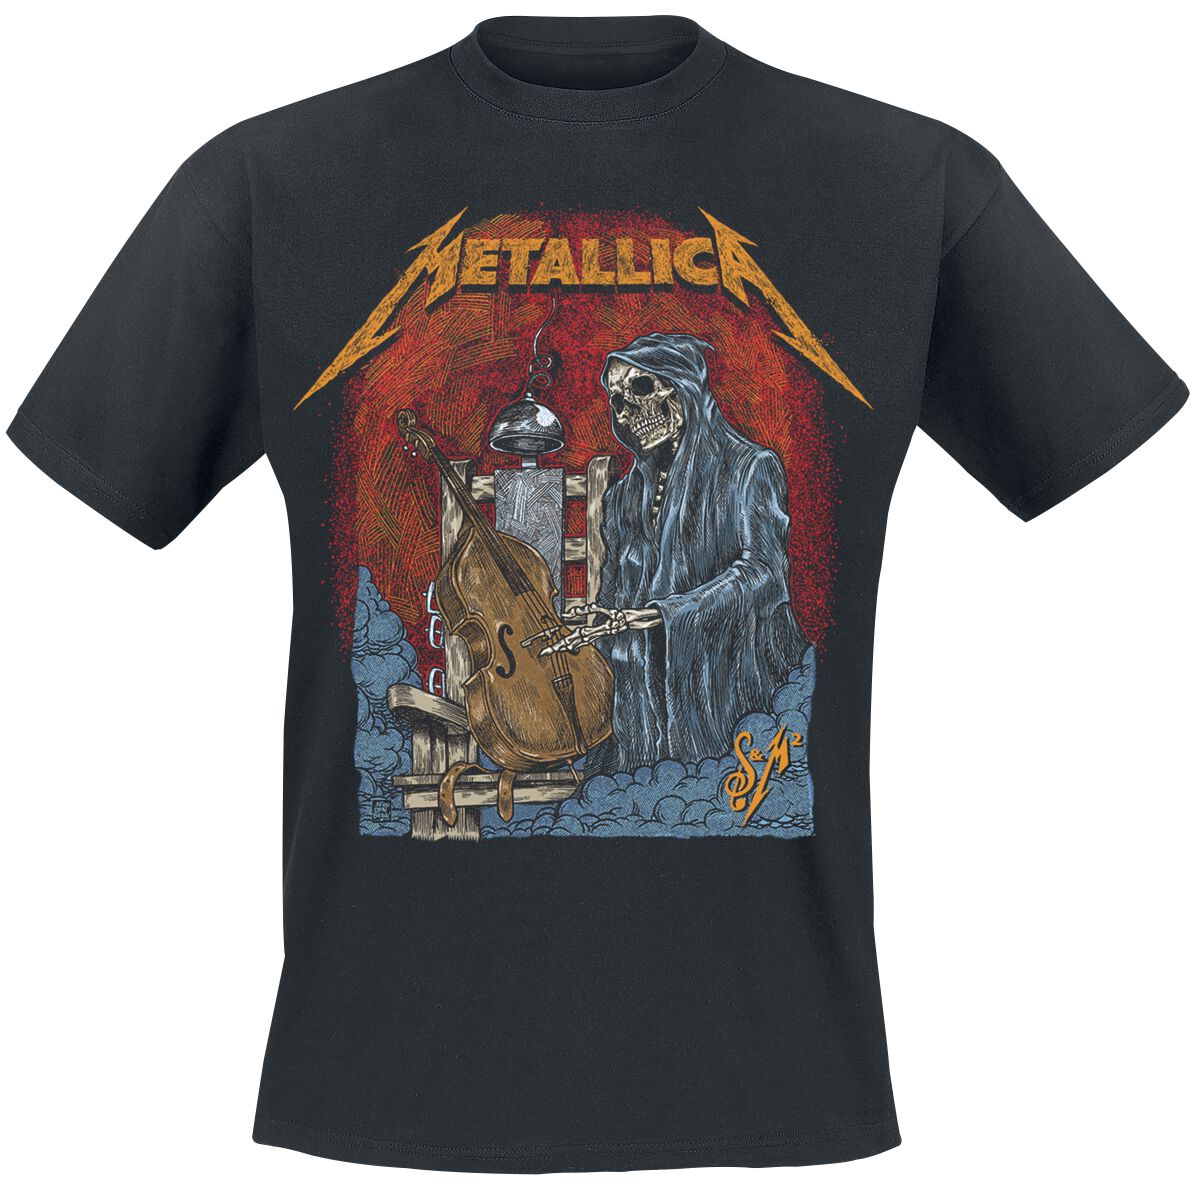 Metallica T-Shirt - S&M2 Cello Reaper - S bis 5XL - für Männer - Größe M - schwarz  - Lizenziertes Merchandise!